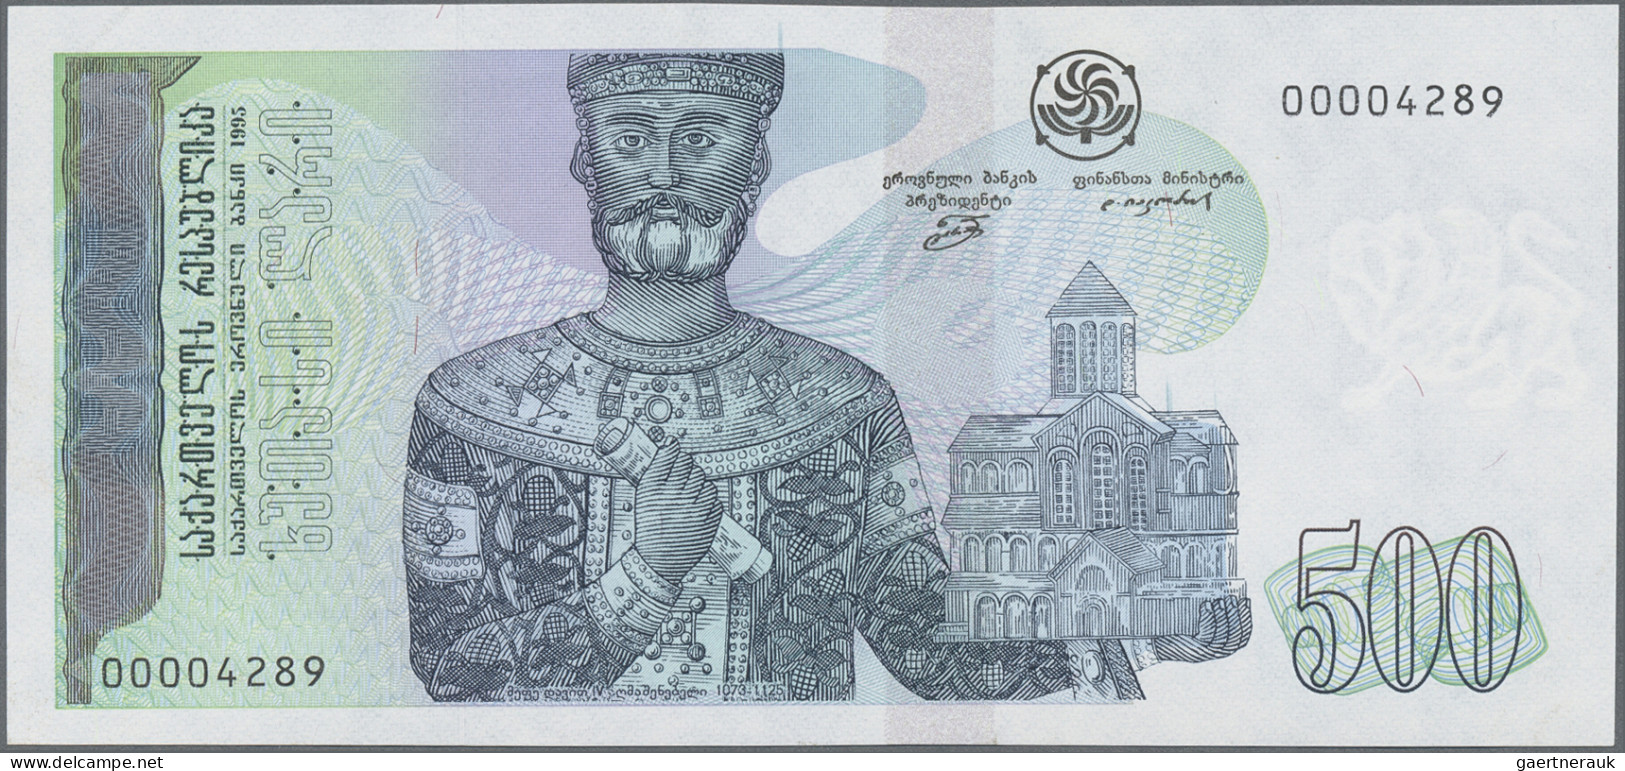 Georgia: Georgian National Bank, 500 Lari 1995, With Low Serial # 00004289, P.60 - Géorgie